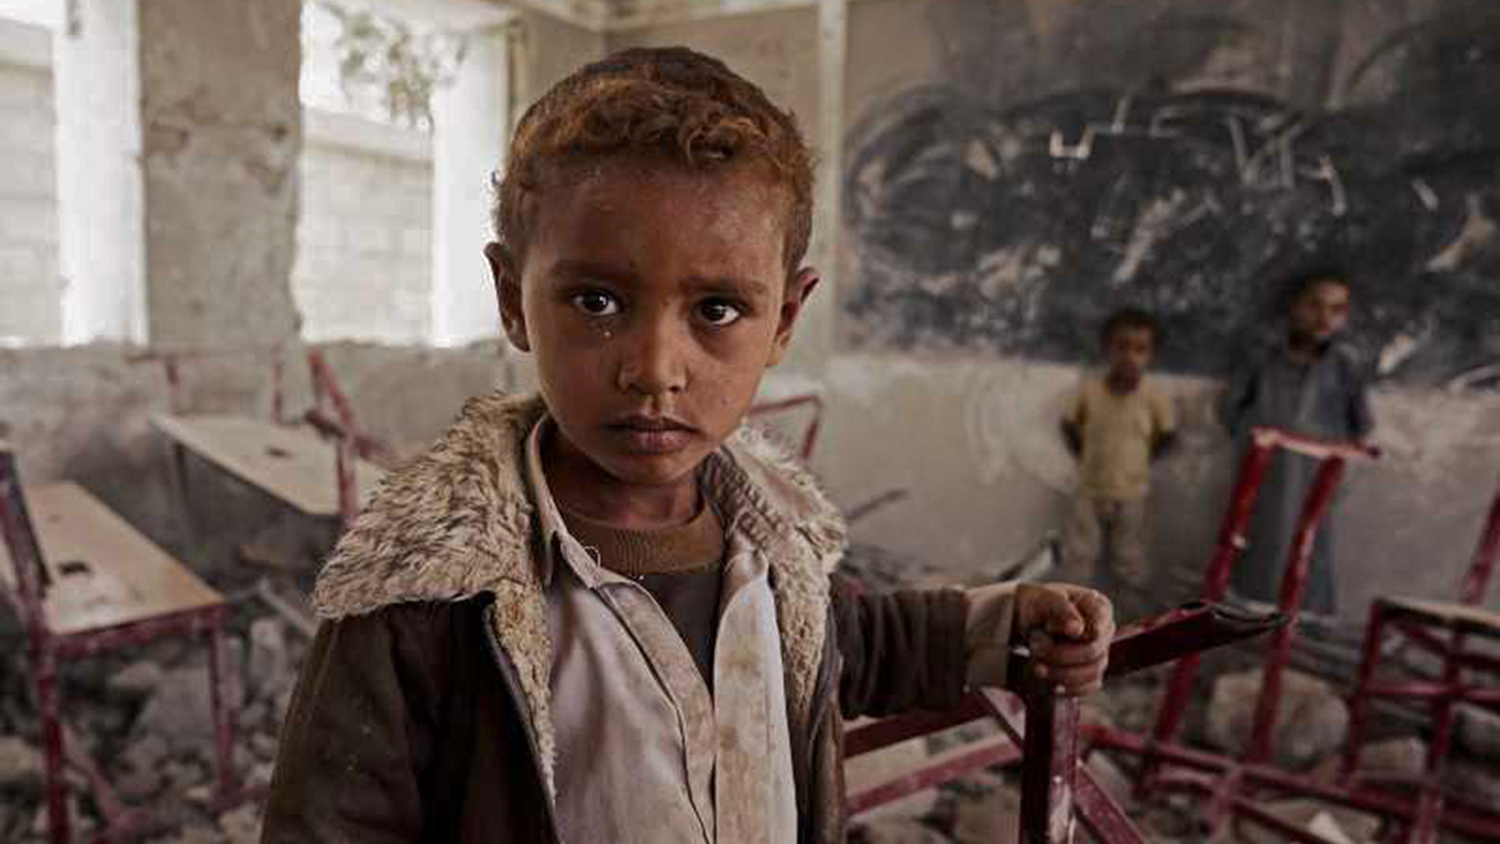 Un enfant au milieu des ruines de la guerre au Ymen.